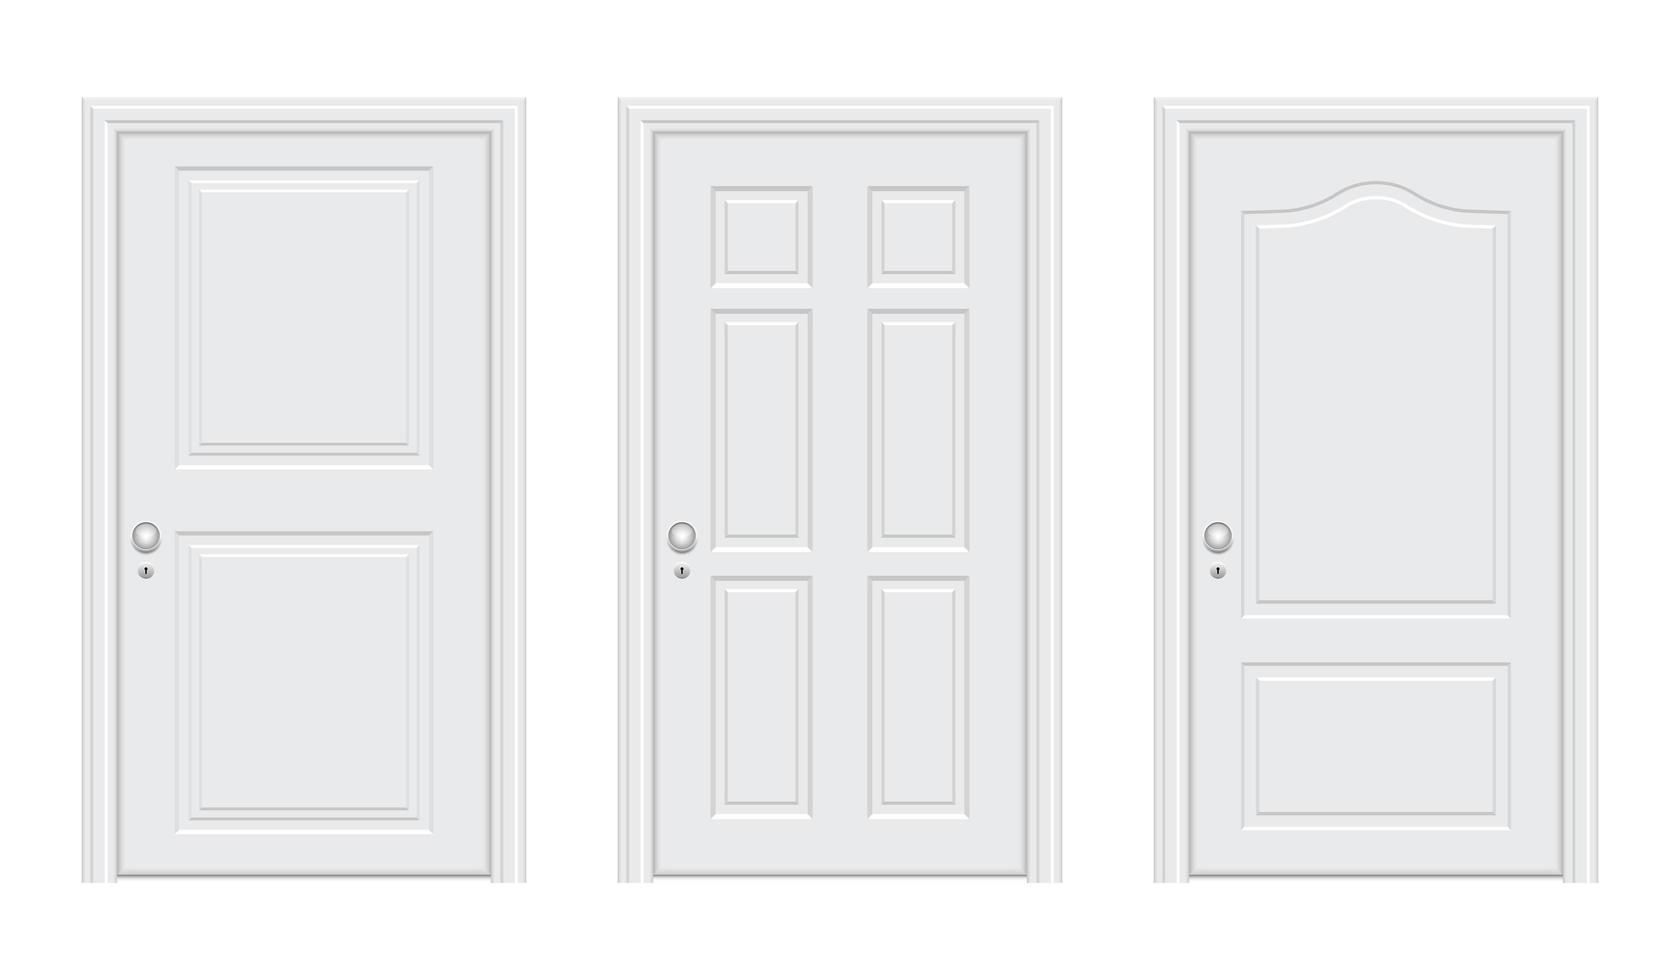 realistische witte deur vector ontwerp illustratie